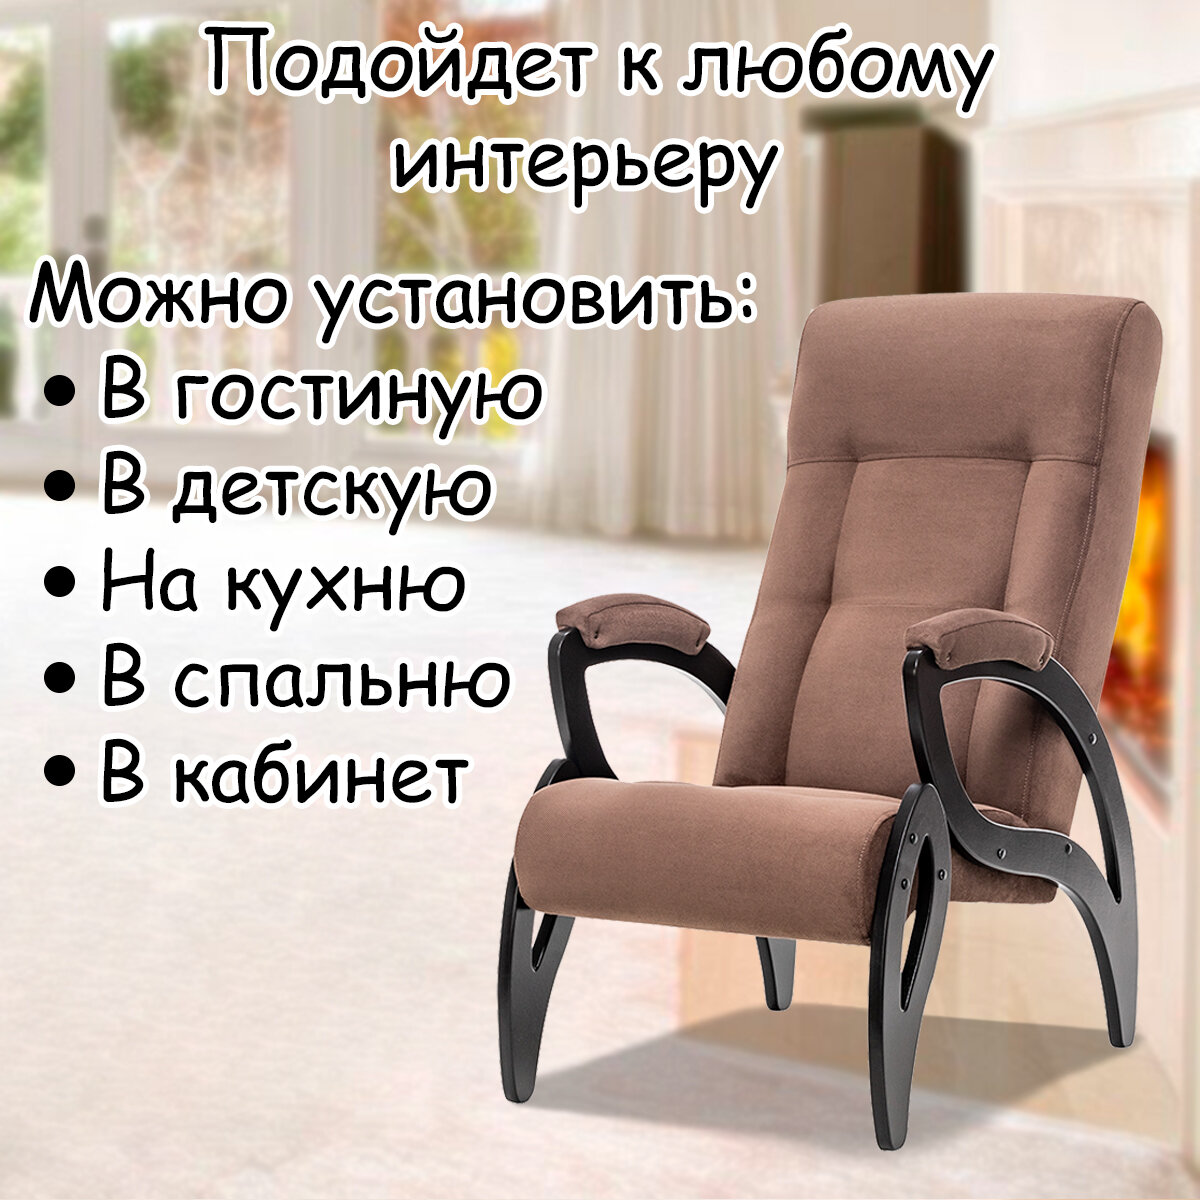 Кресло для взрослых 58.5х87х99 см, модель 51, verona, цвет: Brown (коричневый), каркас: Venge (черный) - фотография № 10